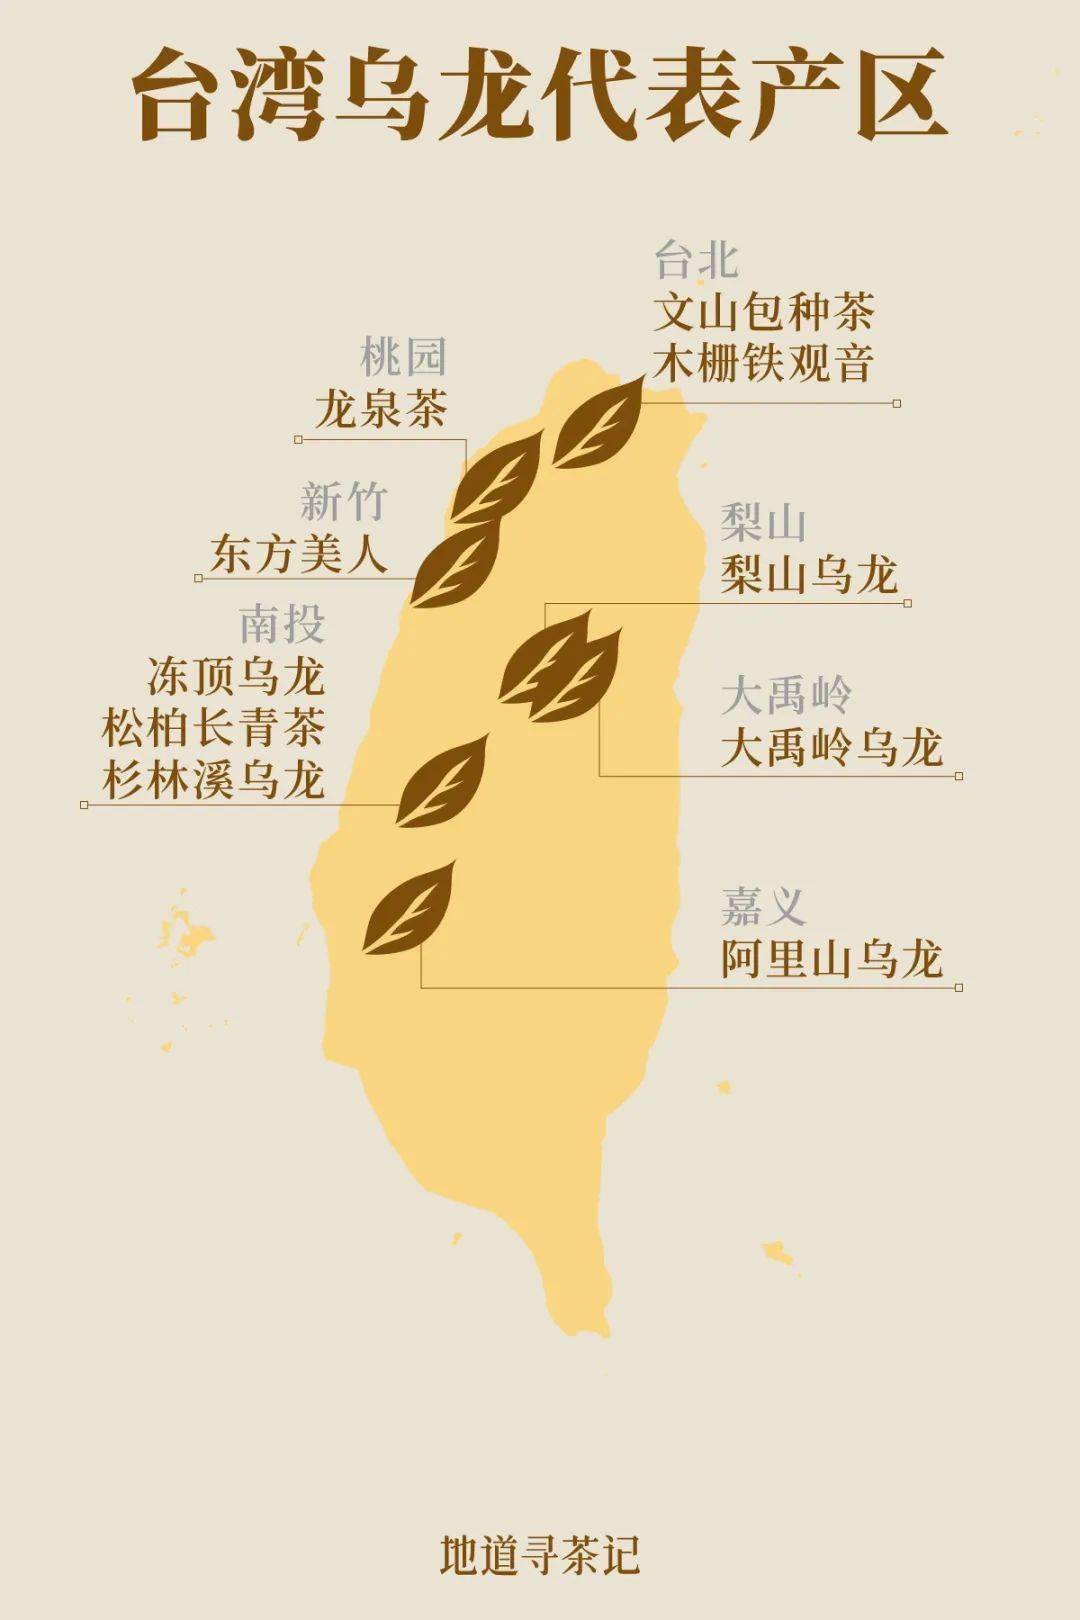 武夷岩茶地图图片